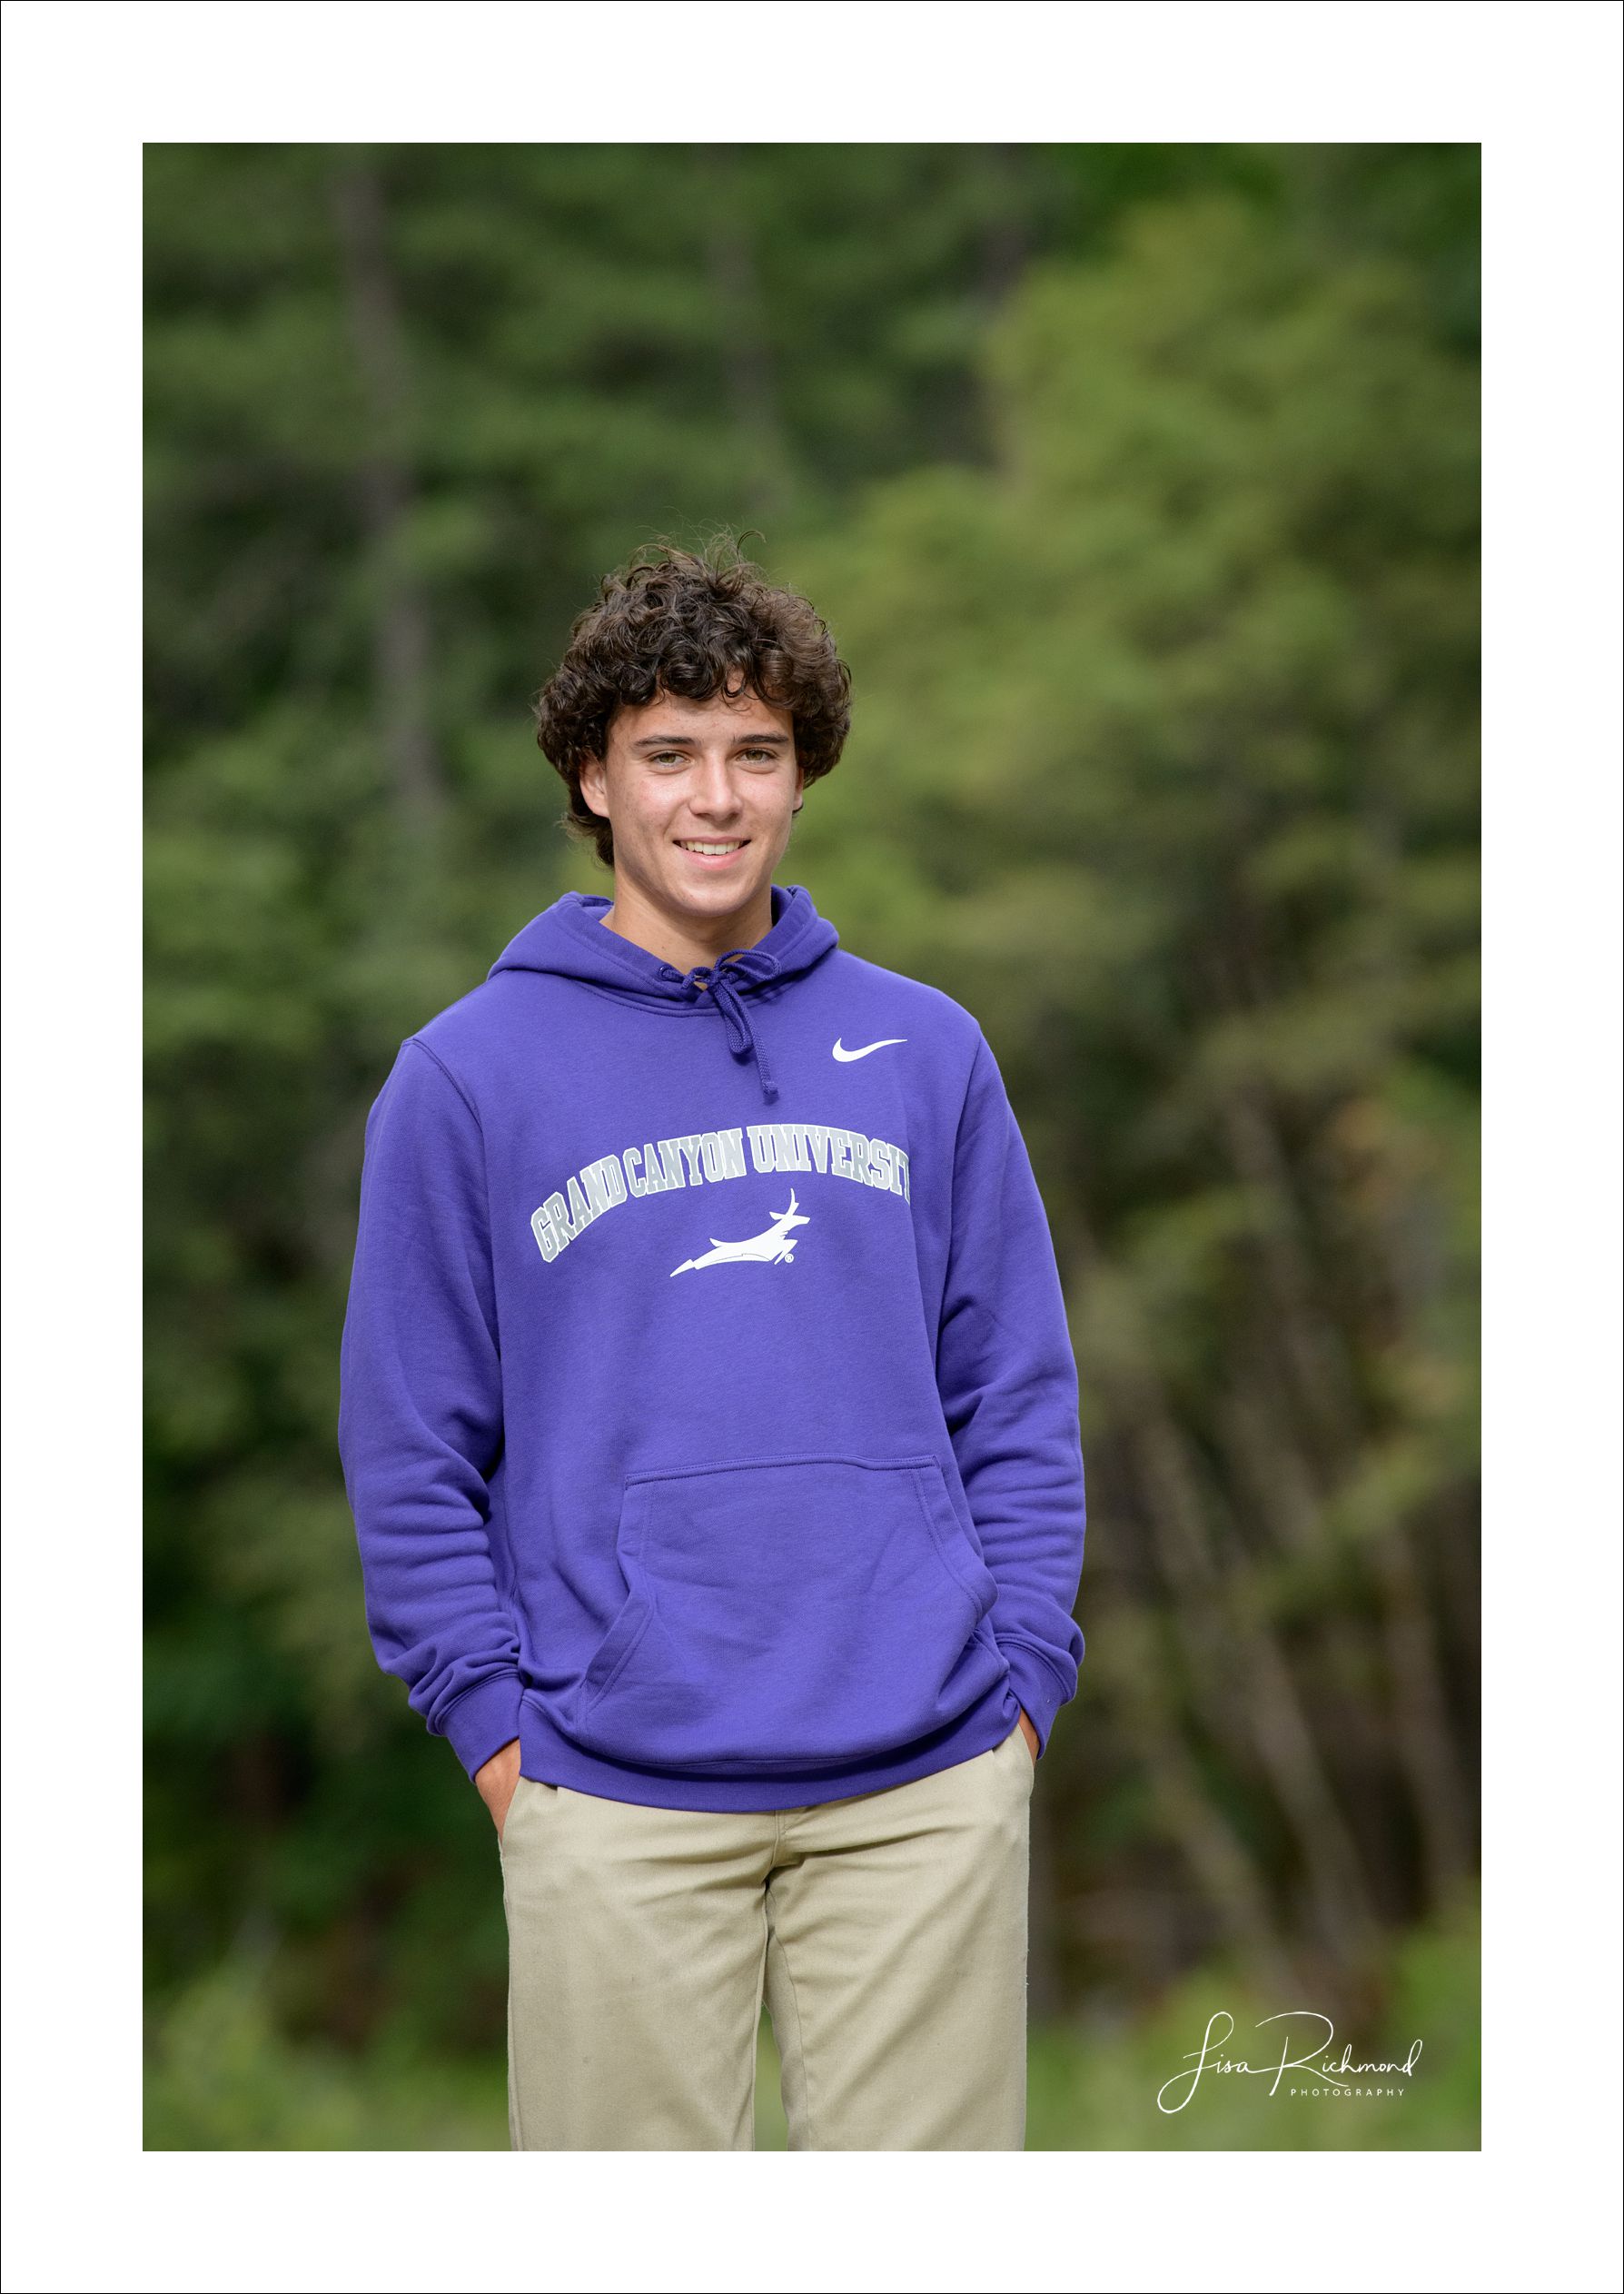 Ethan, 2020 Vista del Lago graduate